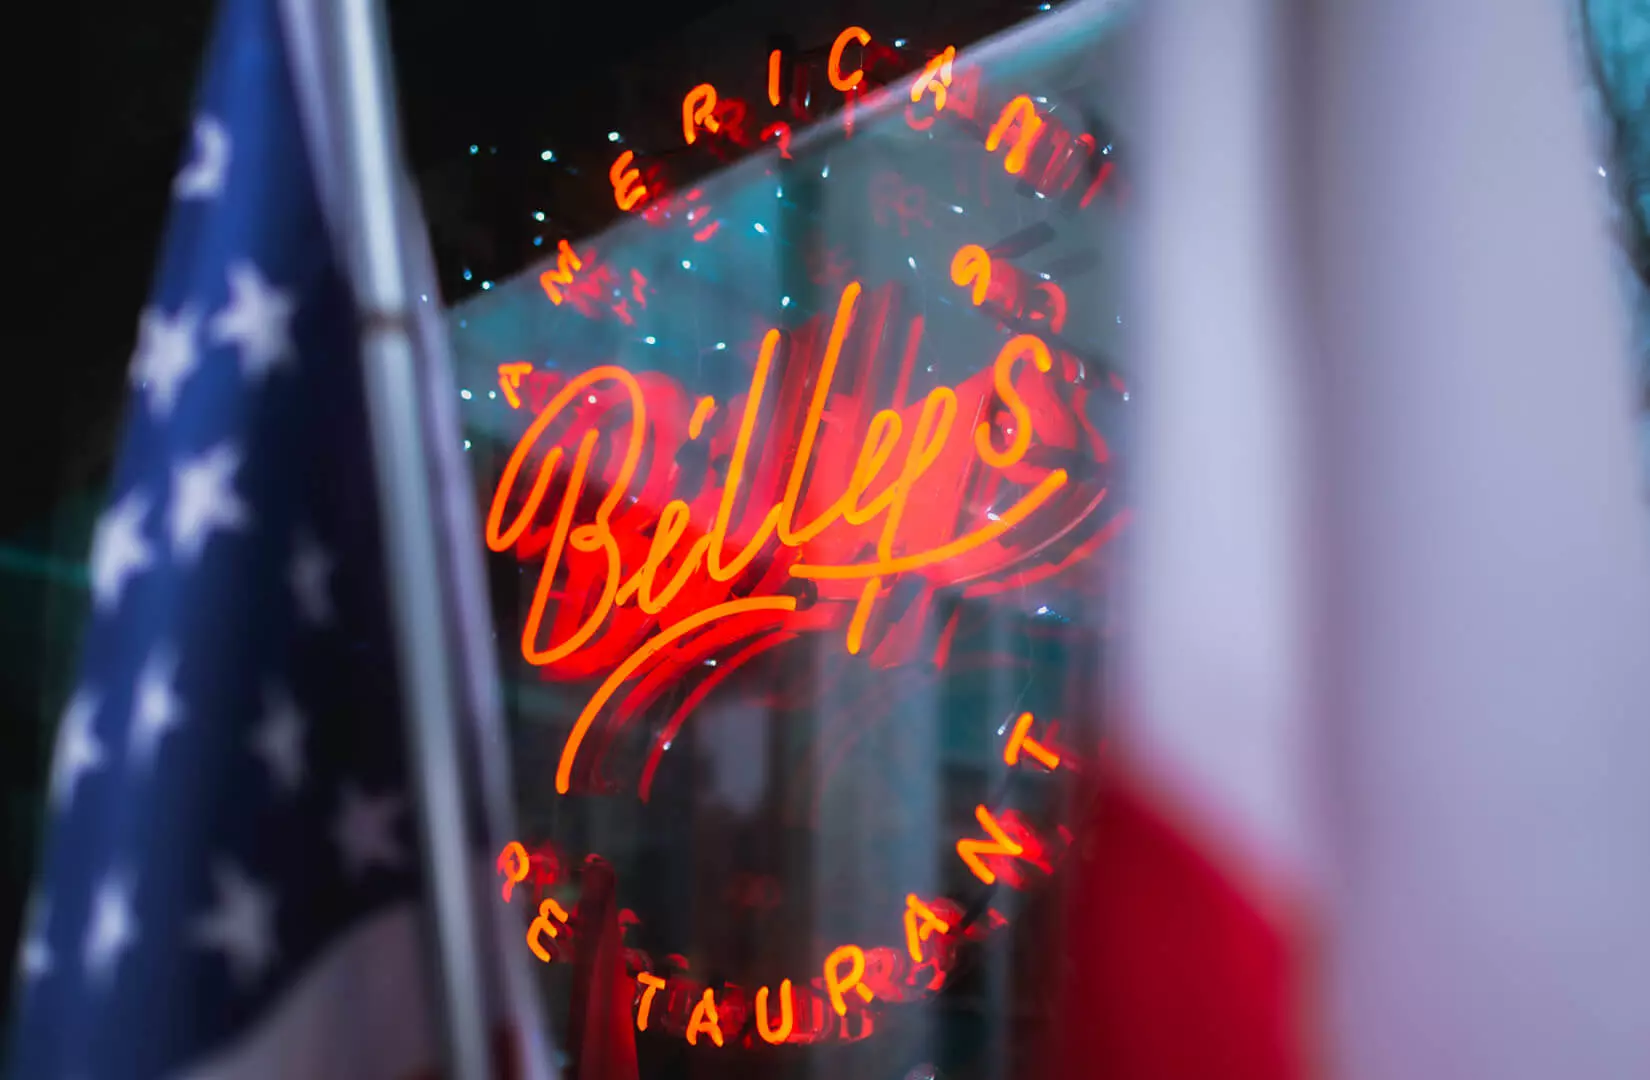 Billy's - Enseigne lumineuse rouge dans un restaurant américain